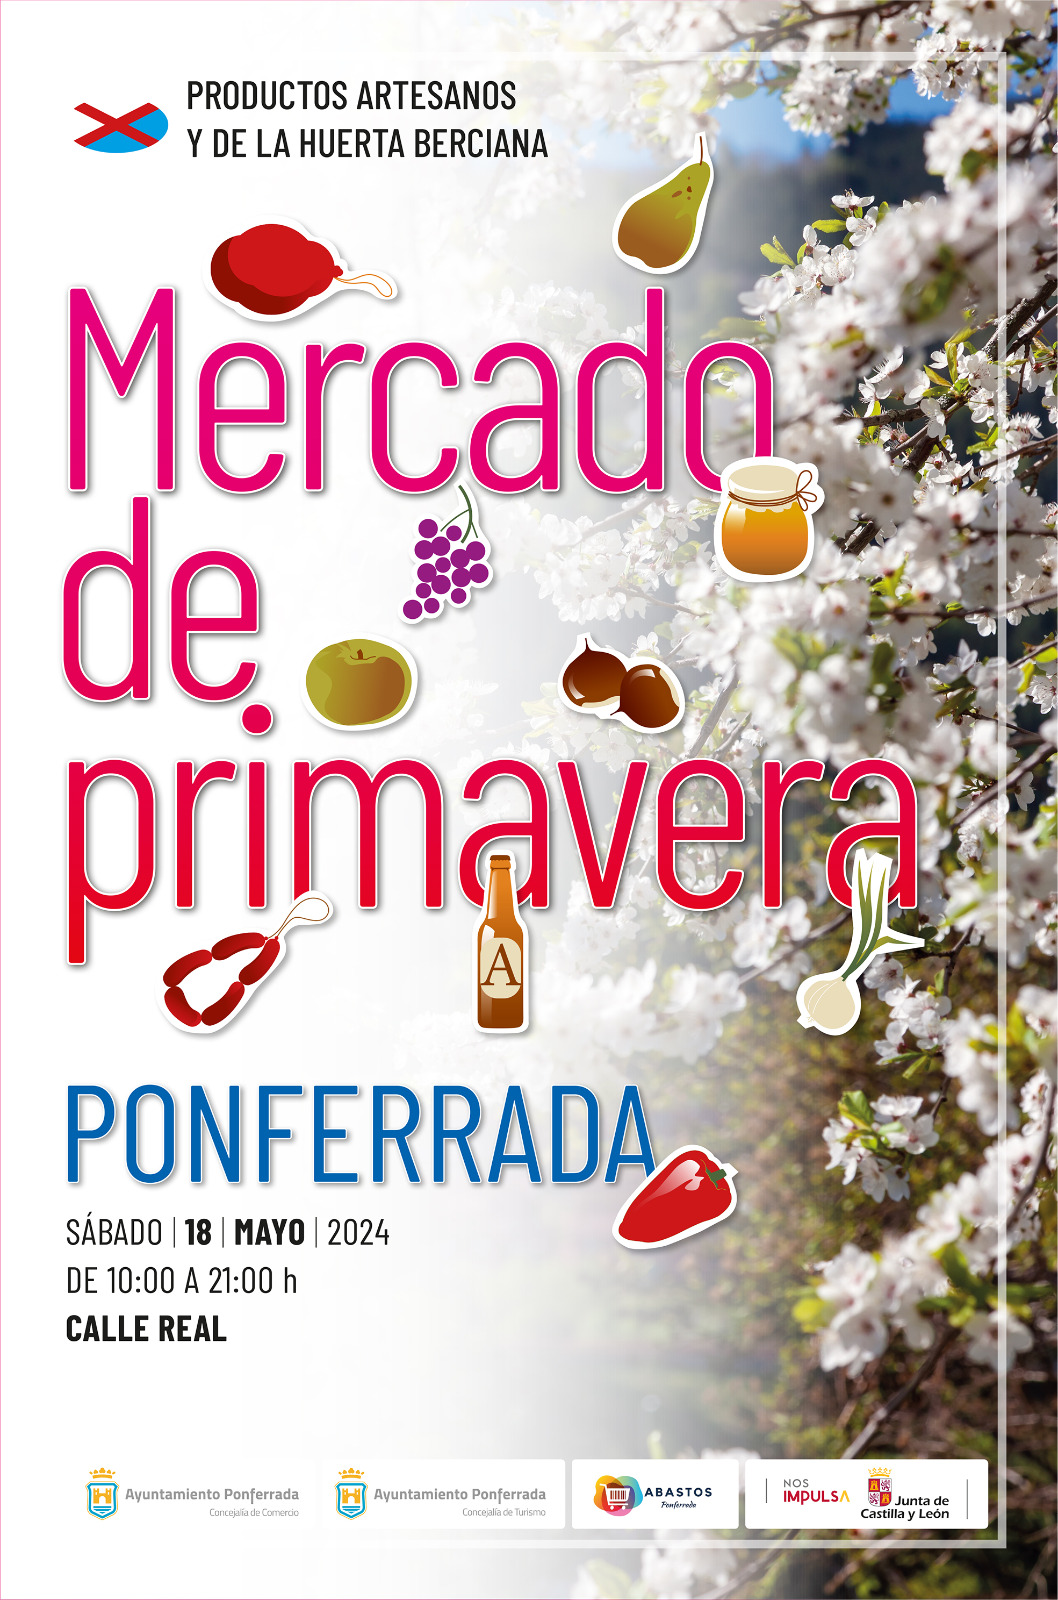 El Mercado de Primavera de Ponferrada se celebrará el sábado 18 de mayo de 2024 2